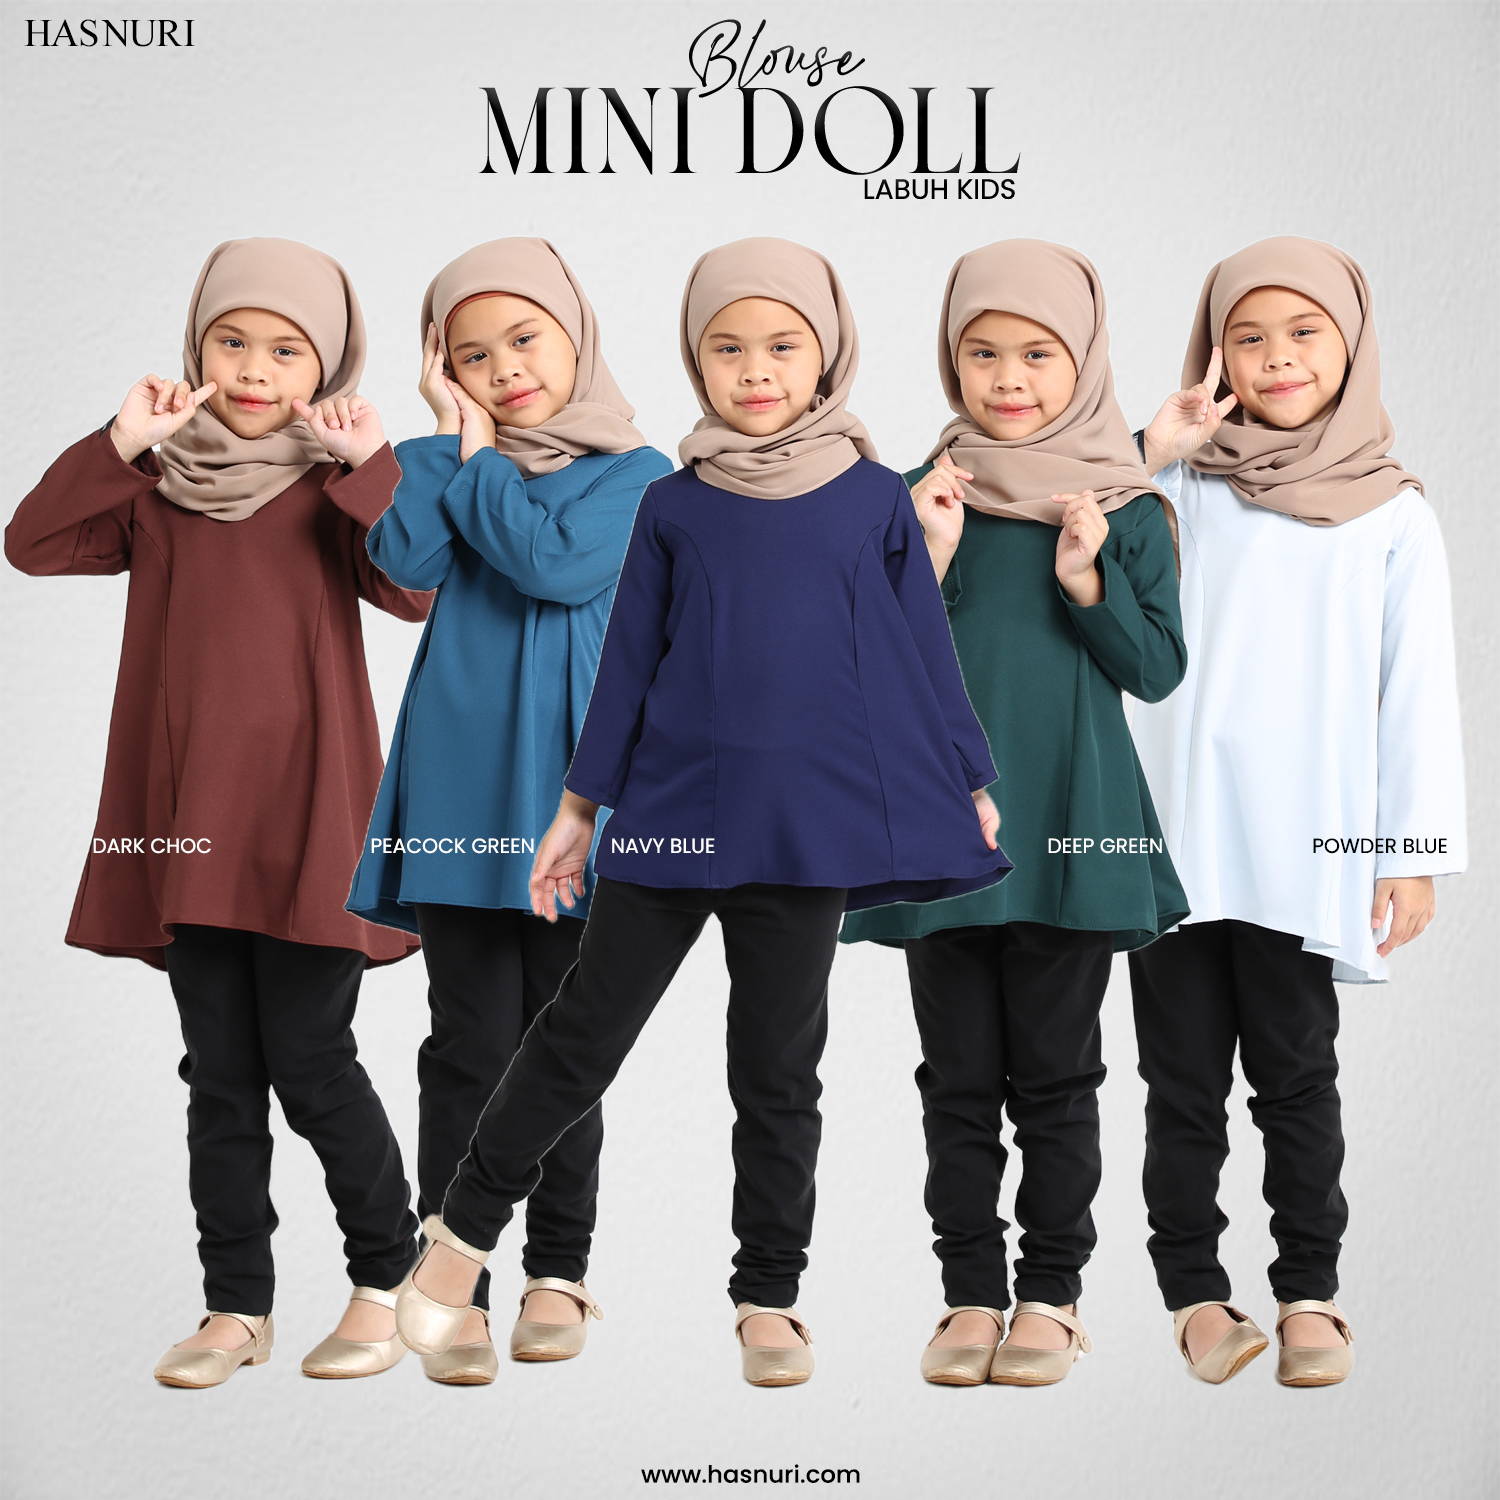 Blouse Mini Doll Labuh Kids - Powder Blue